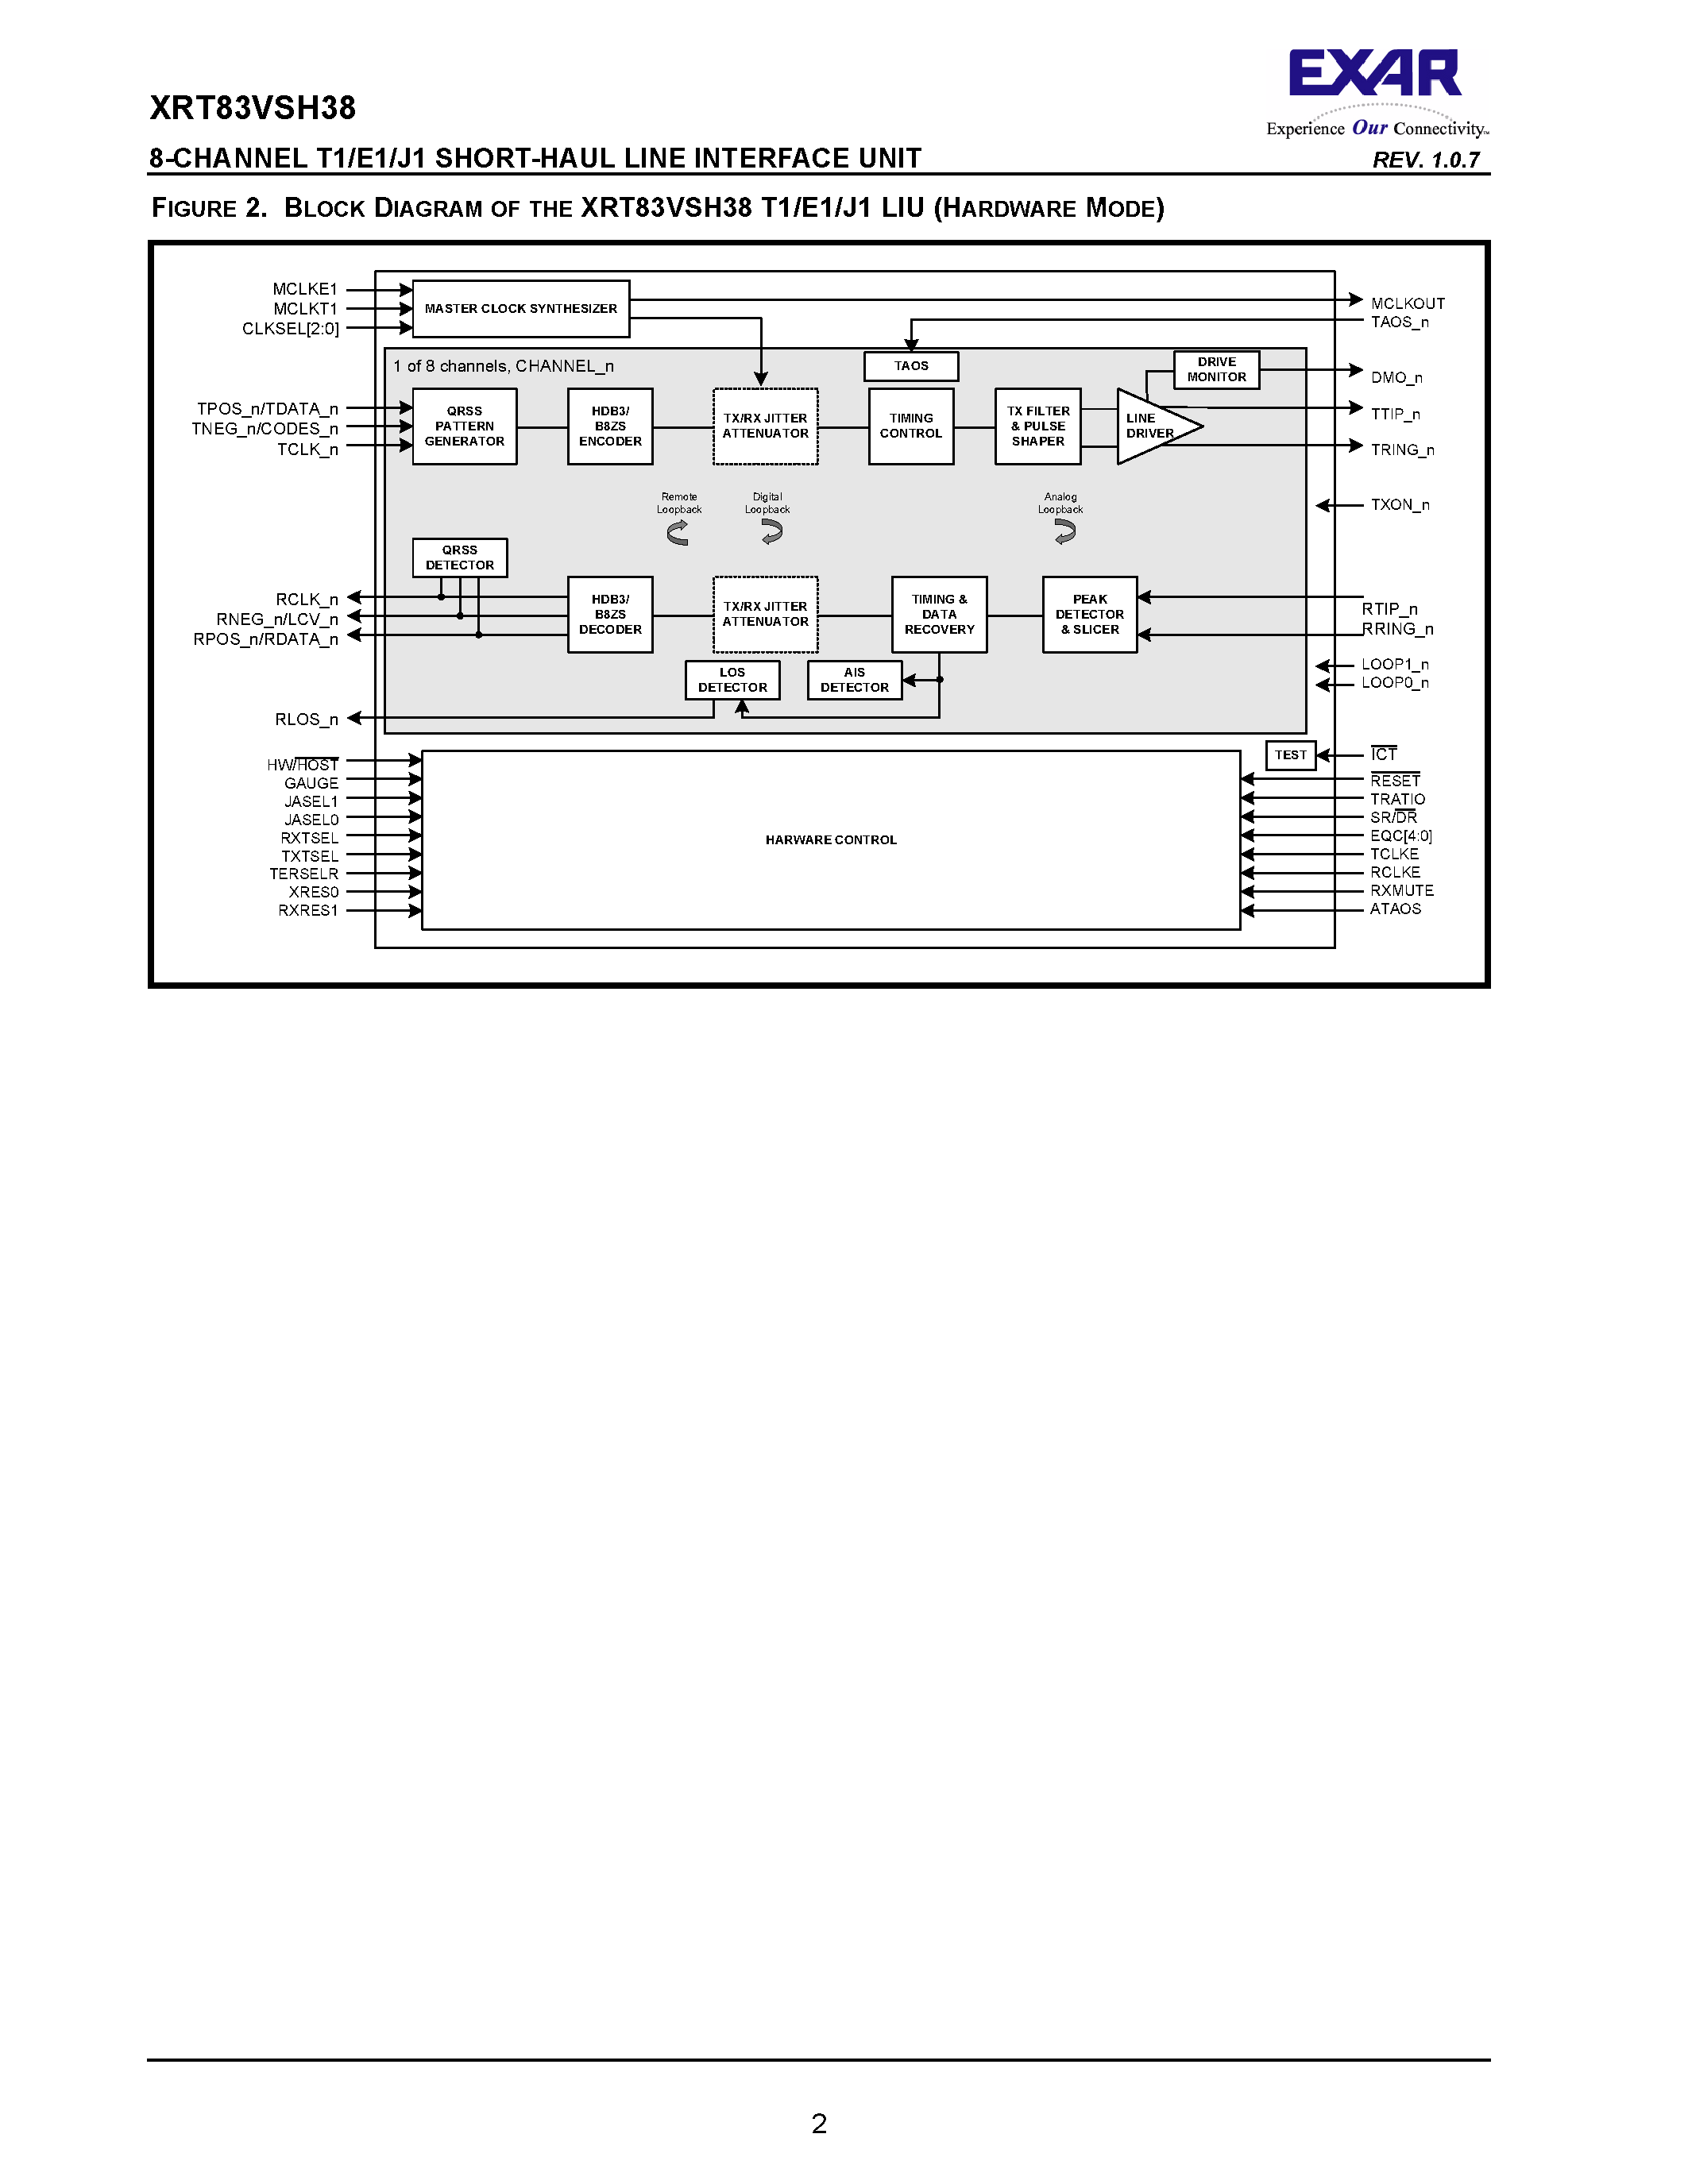 Datasheet XRT83VSH38 - 8-CHANNEL T1/E1/J1 SHORT-HAUL LINE INTERFACE UNIT page 2